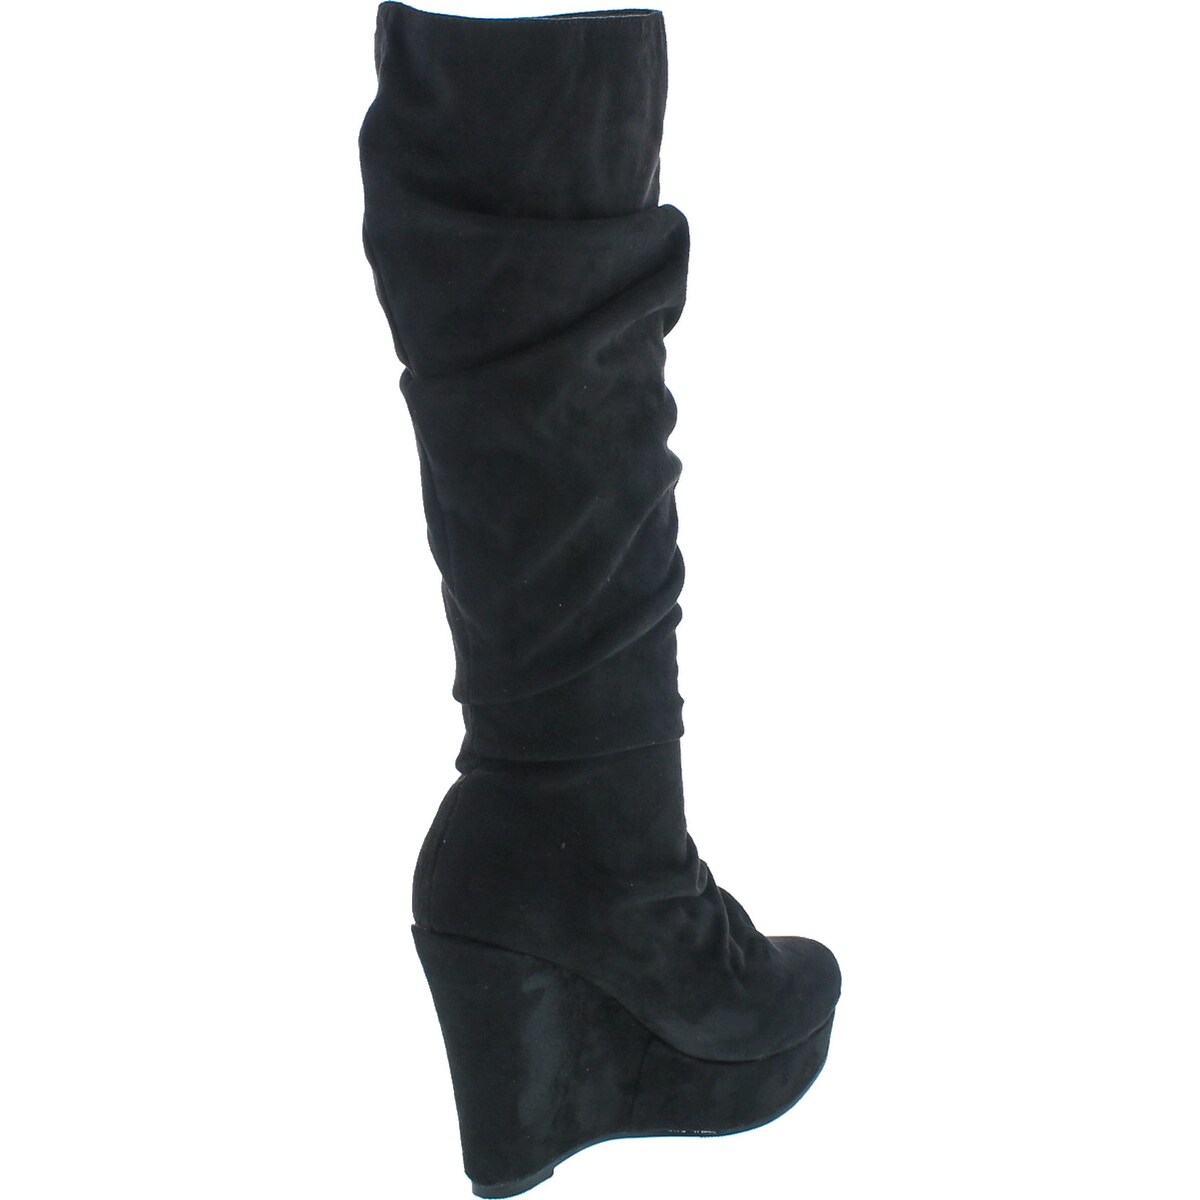 black booties wedge heel